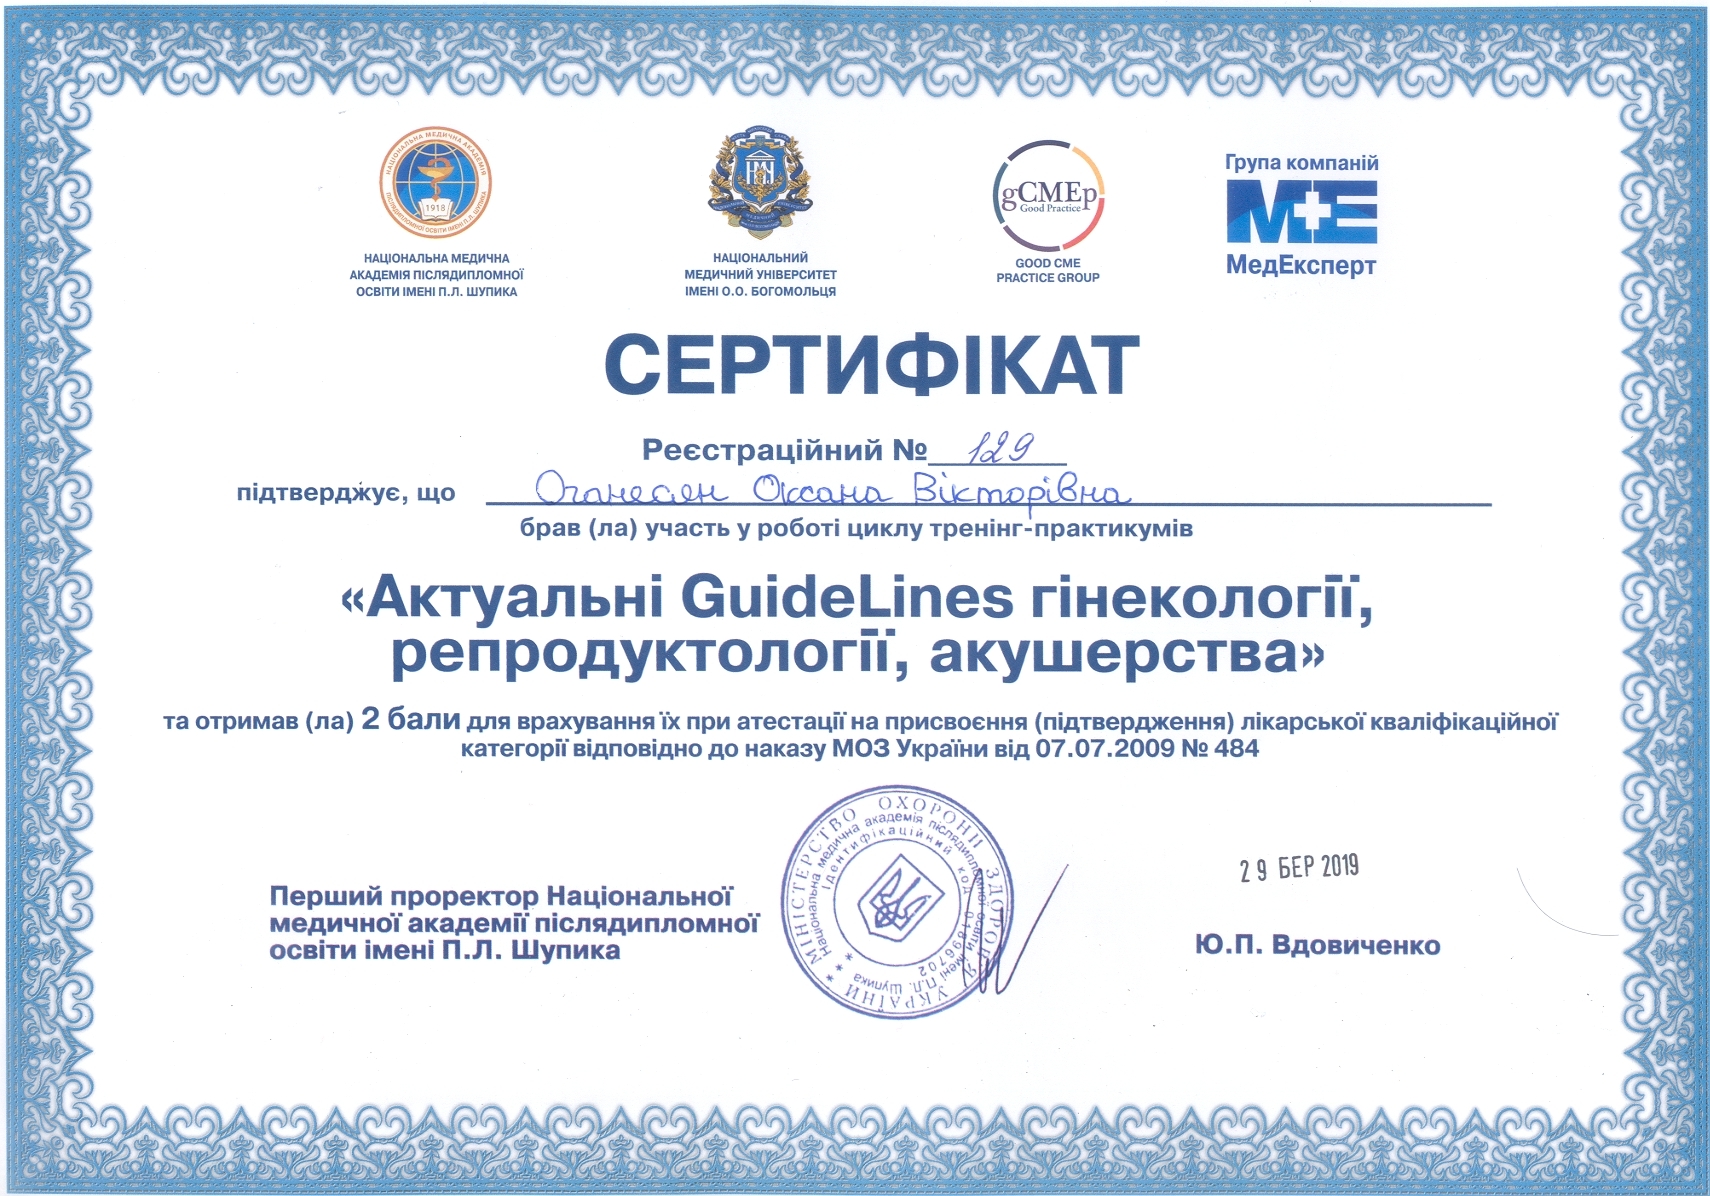 Сертификат №129 Оганесян Оксана Актуальные